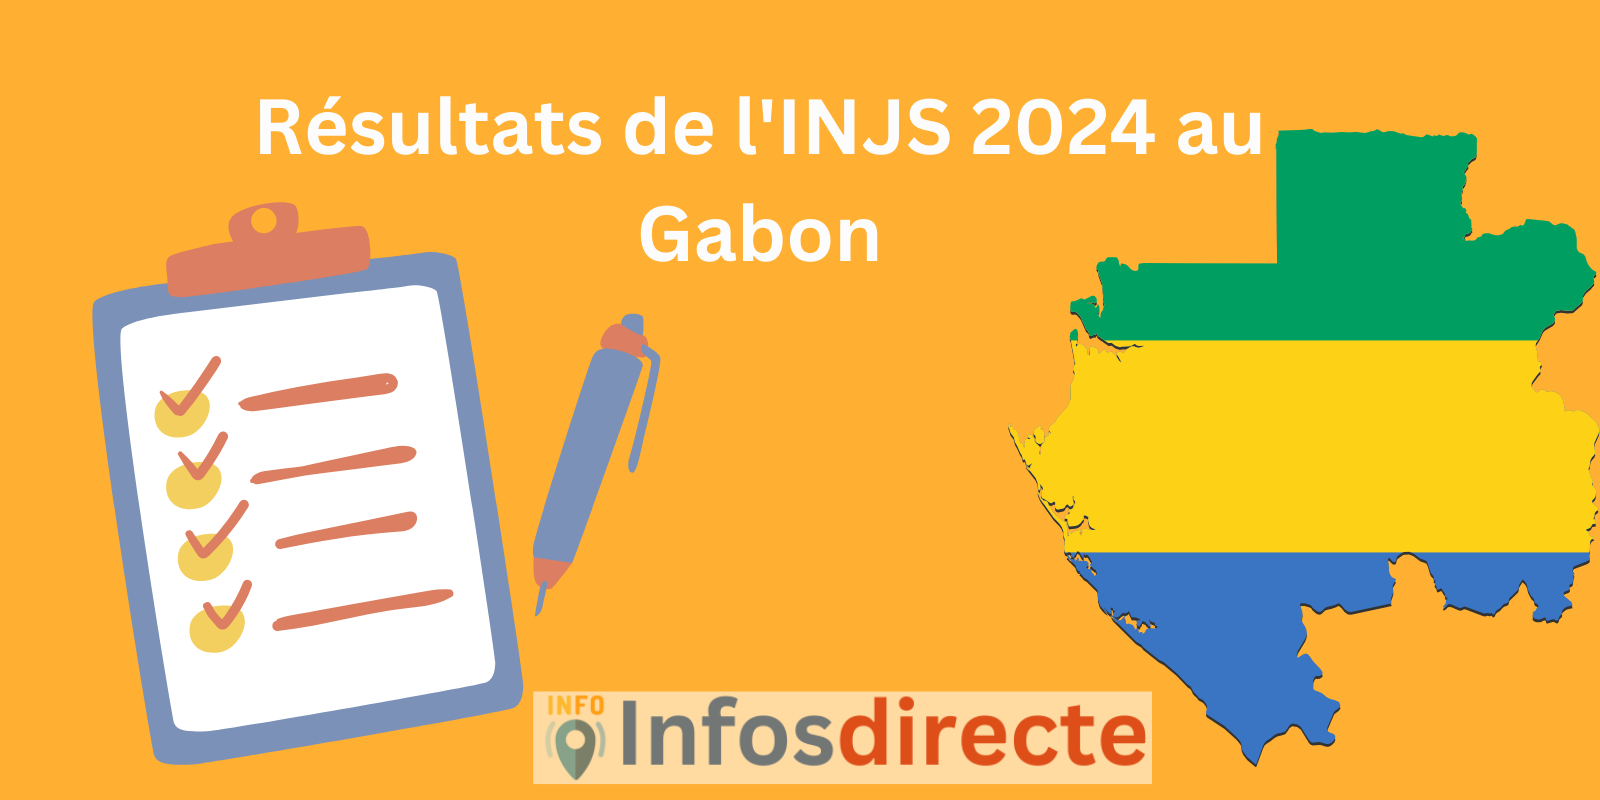 Résultats de l'INJS 2024 au Gabon